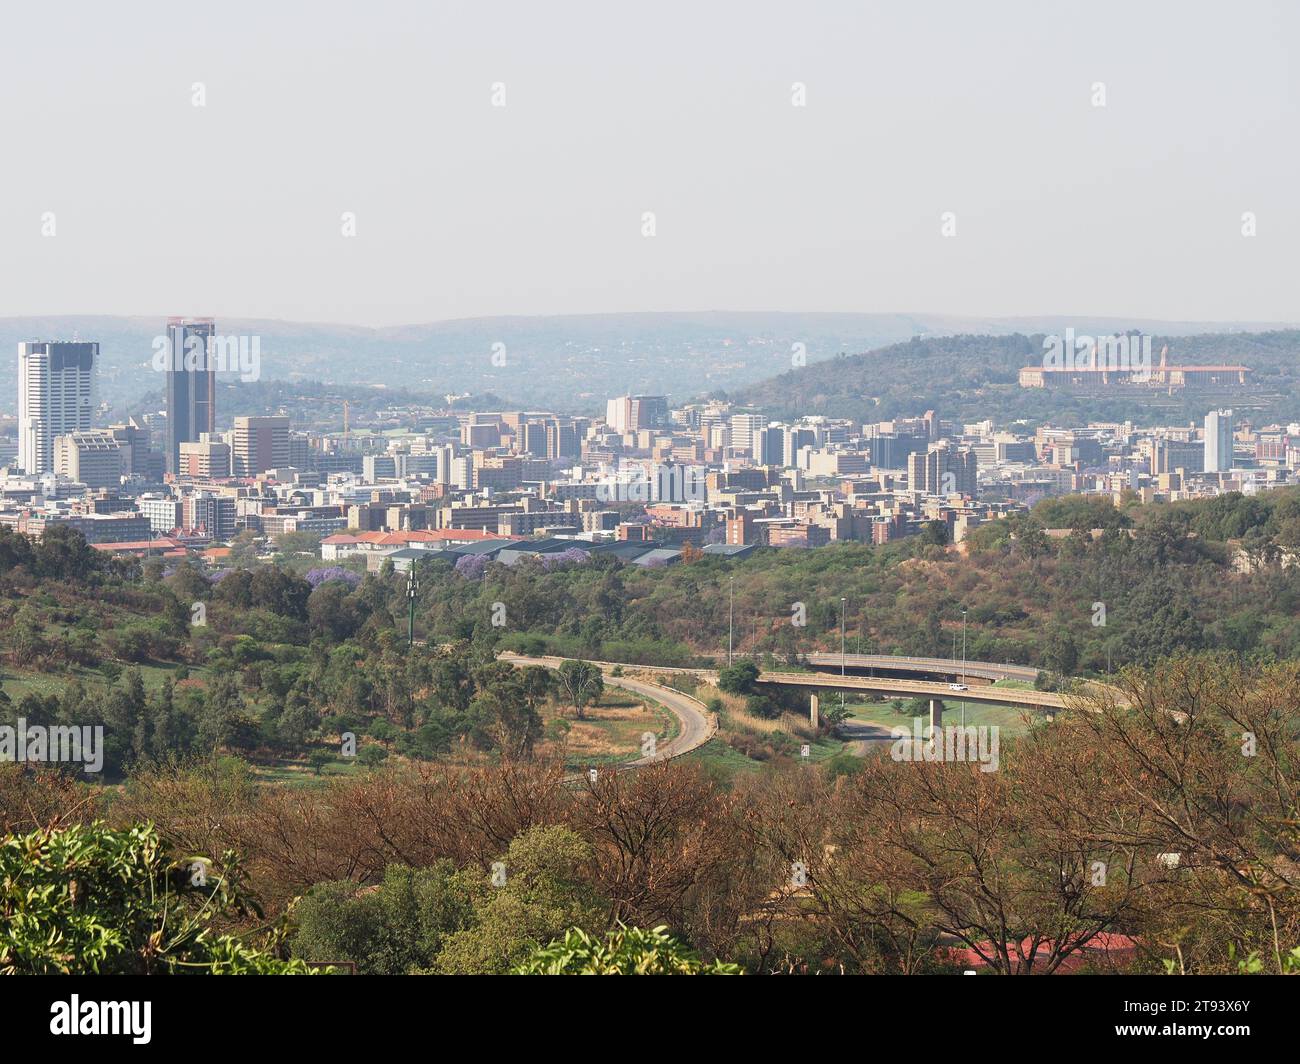 La ville de Pretoria, la capitale administrative, vue de loin avec les autoroutes et la nature au premier plan. Pretoria, Gauteng, Afrique du Sud. Banque D'Images